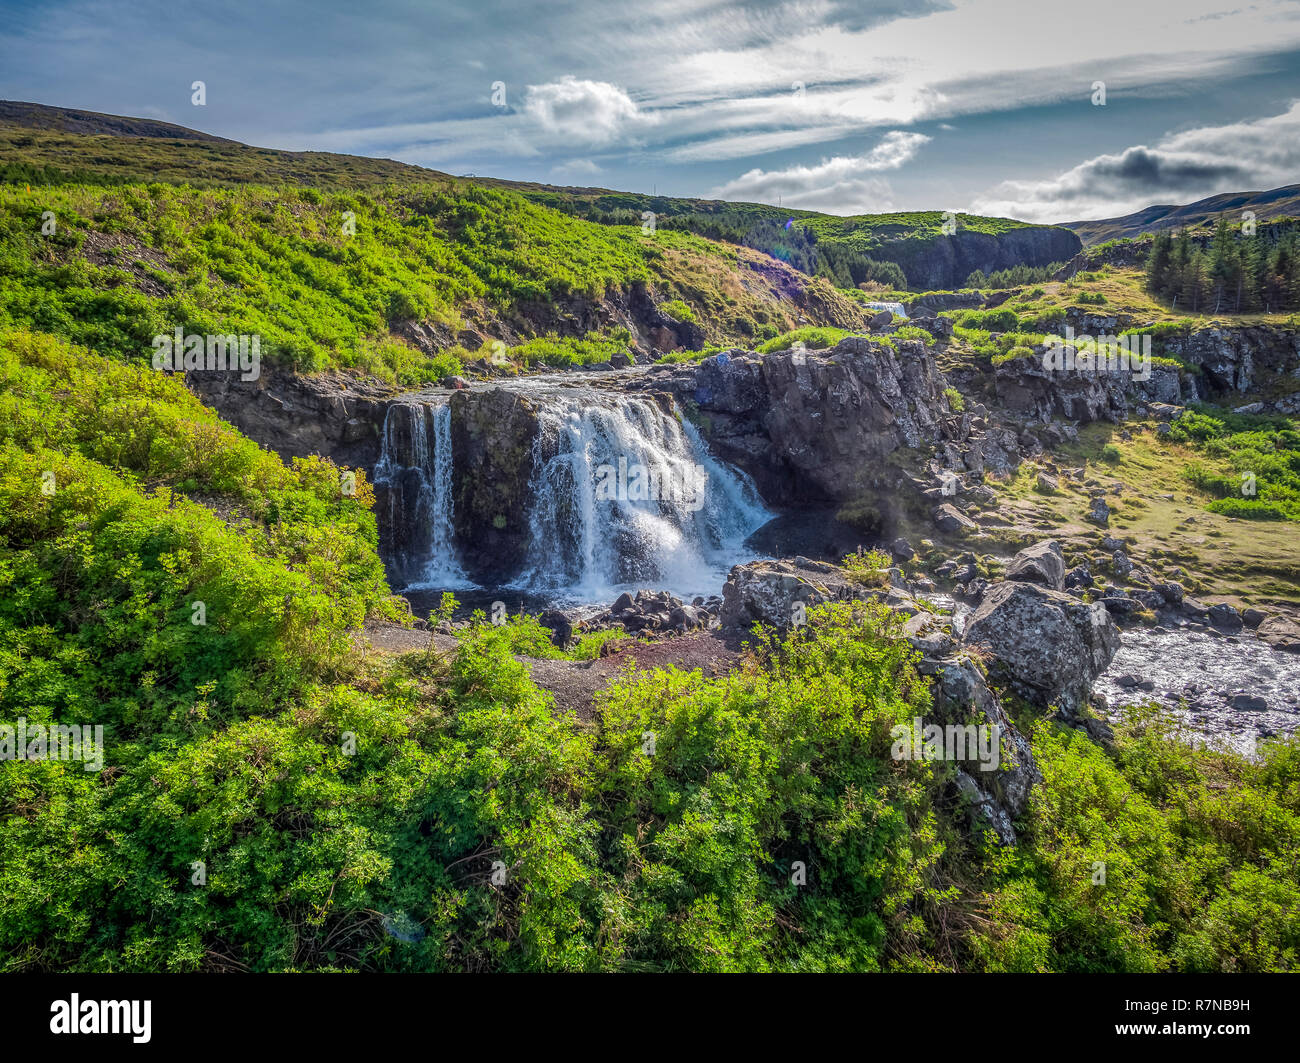 Fossa de cascades, de Hvalfjordur (Islande). Cette image est tourné à l'aide d'un drone. Banque D'Images